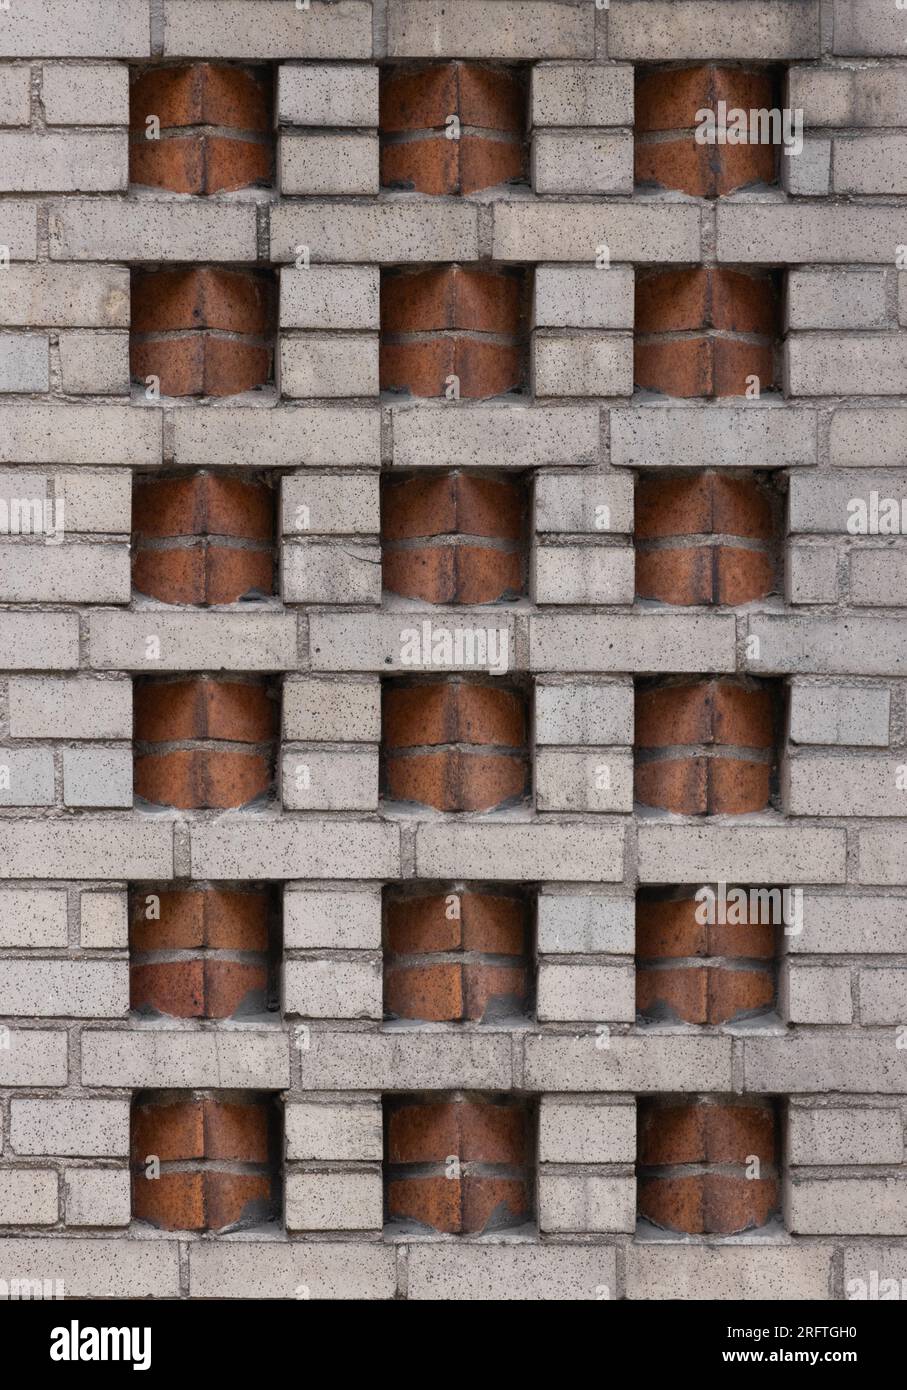 motif de brique décorative art déco à deux tons dans un mur de briques beiges avec des inserts de briques de couleur terre cuite dans un placement en dents de scie créent une géométrie Banque D'Images